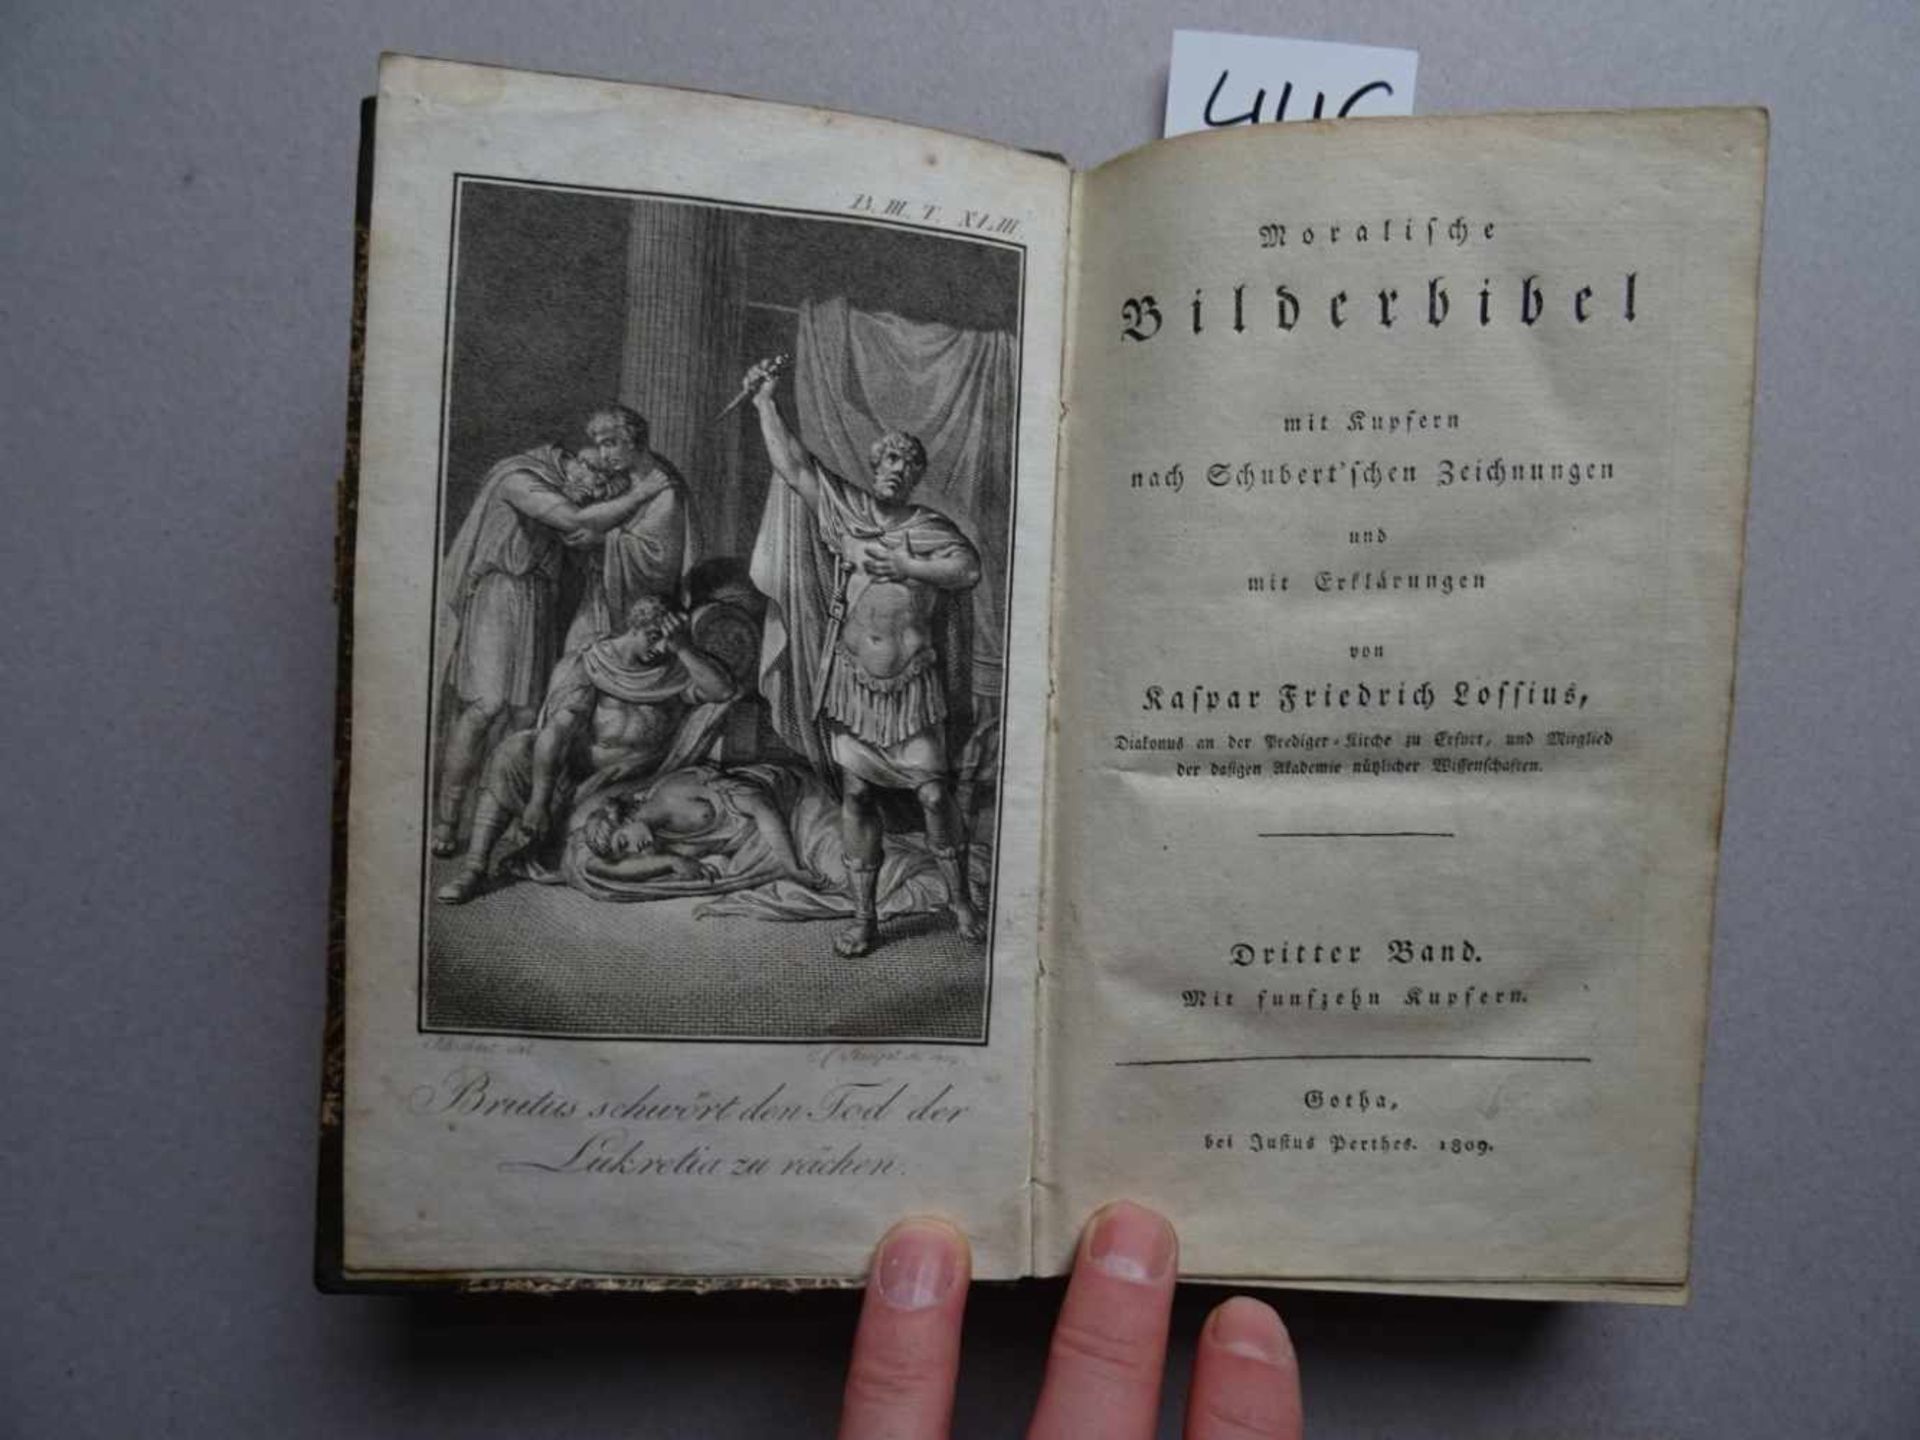 Lossius, K.F.Moralische Bilderbibel mit Kupfern nach Schubertschen Zeichnungen und mit - Image 2 of 4